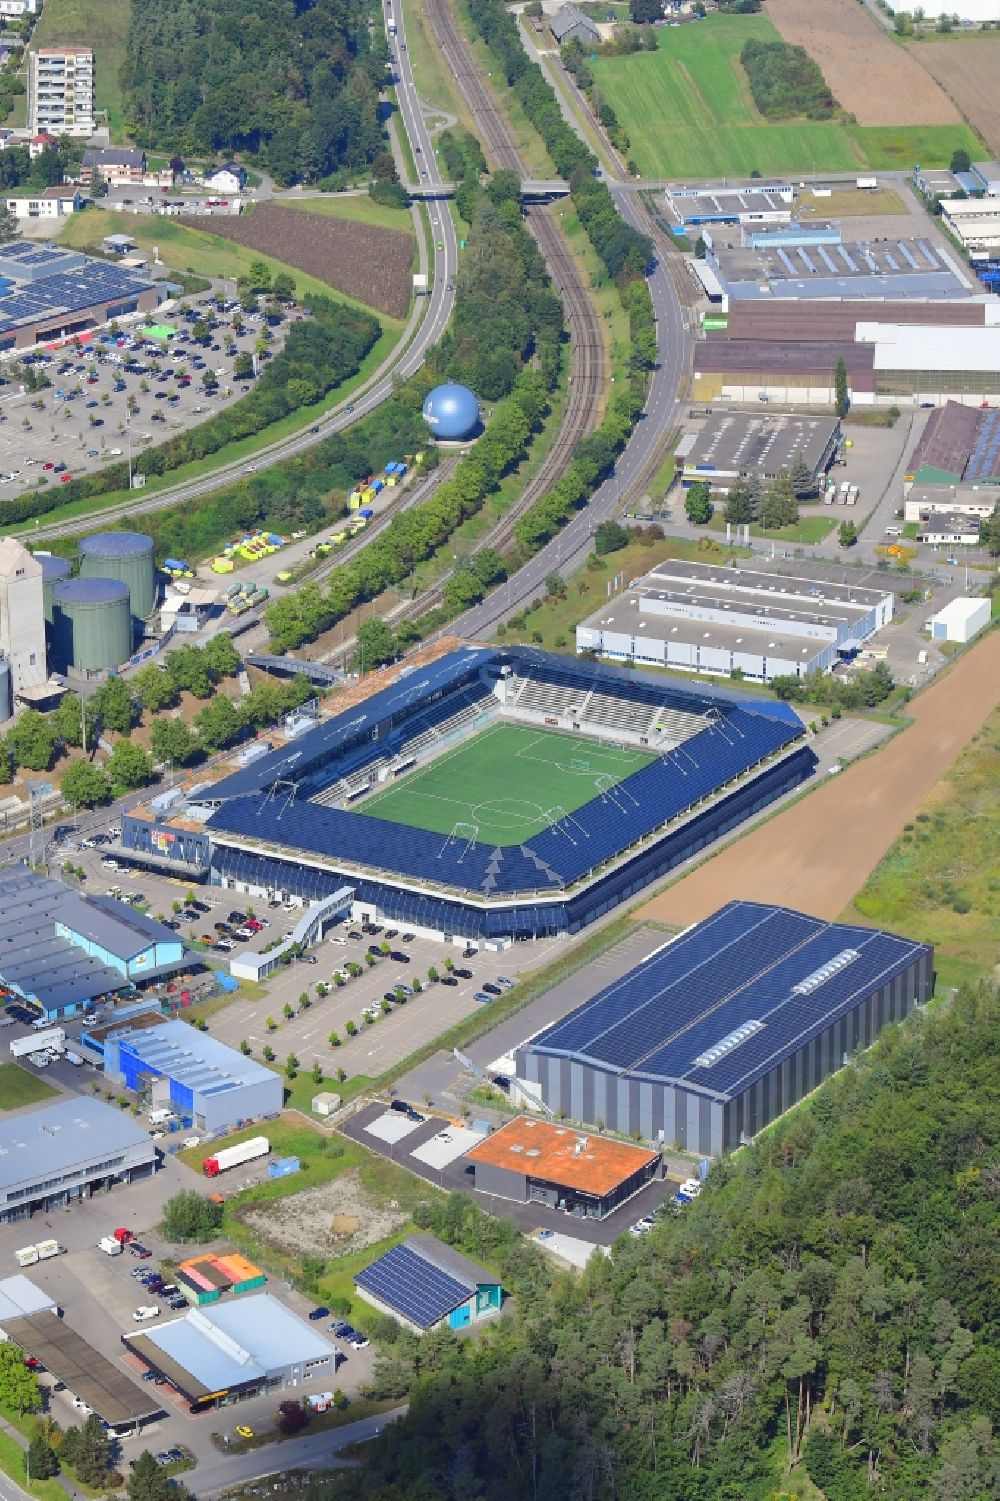 Aerial image Schaffhausen - Sports facility grounds of the Arena stadium wefox Arena in Schaffhausen, Switzerland